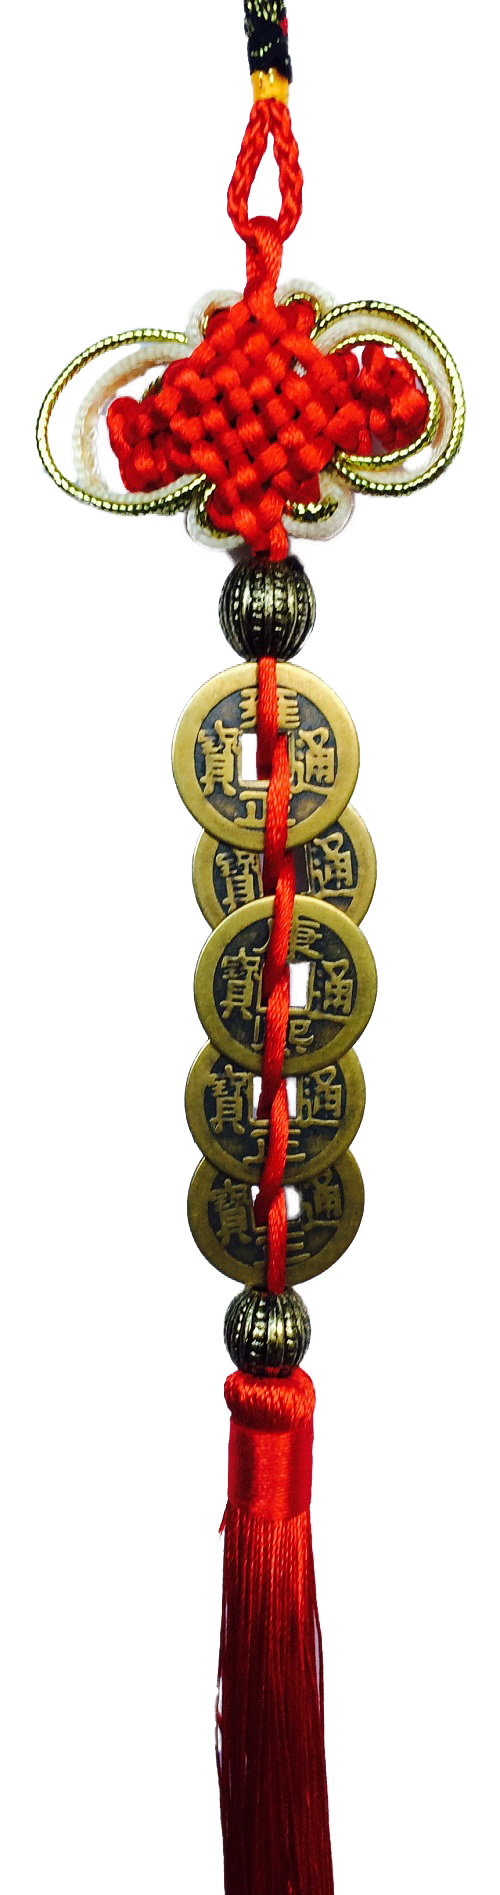 amulette-5-pieces-feng-shui-chance-et-richesse-pi-17769-1495996305